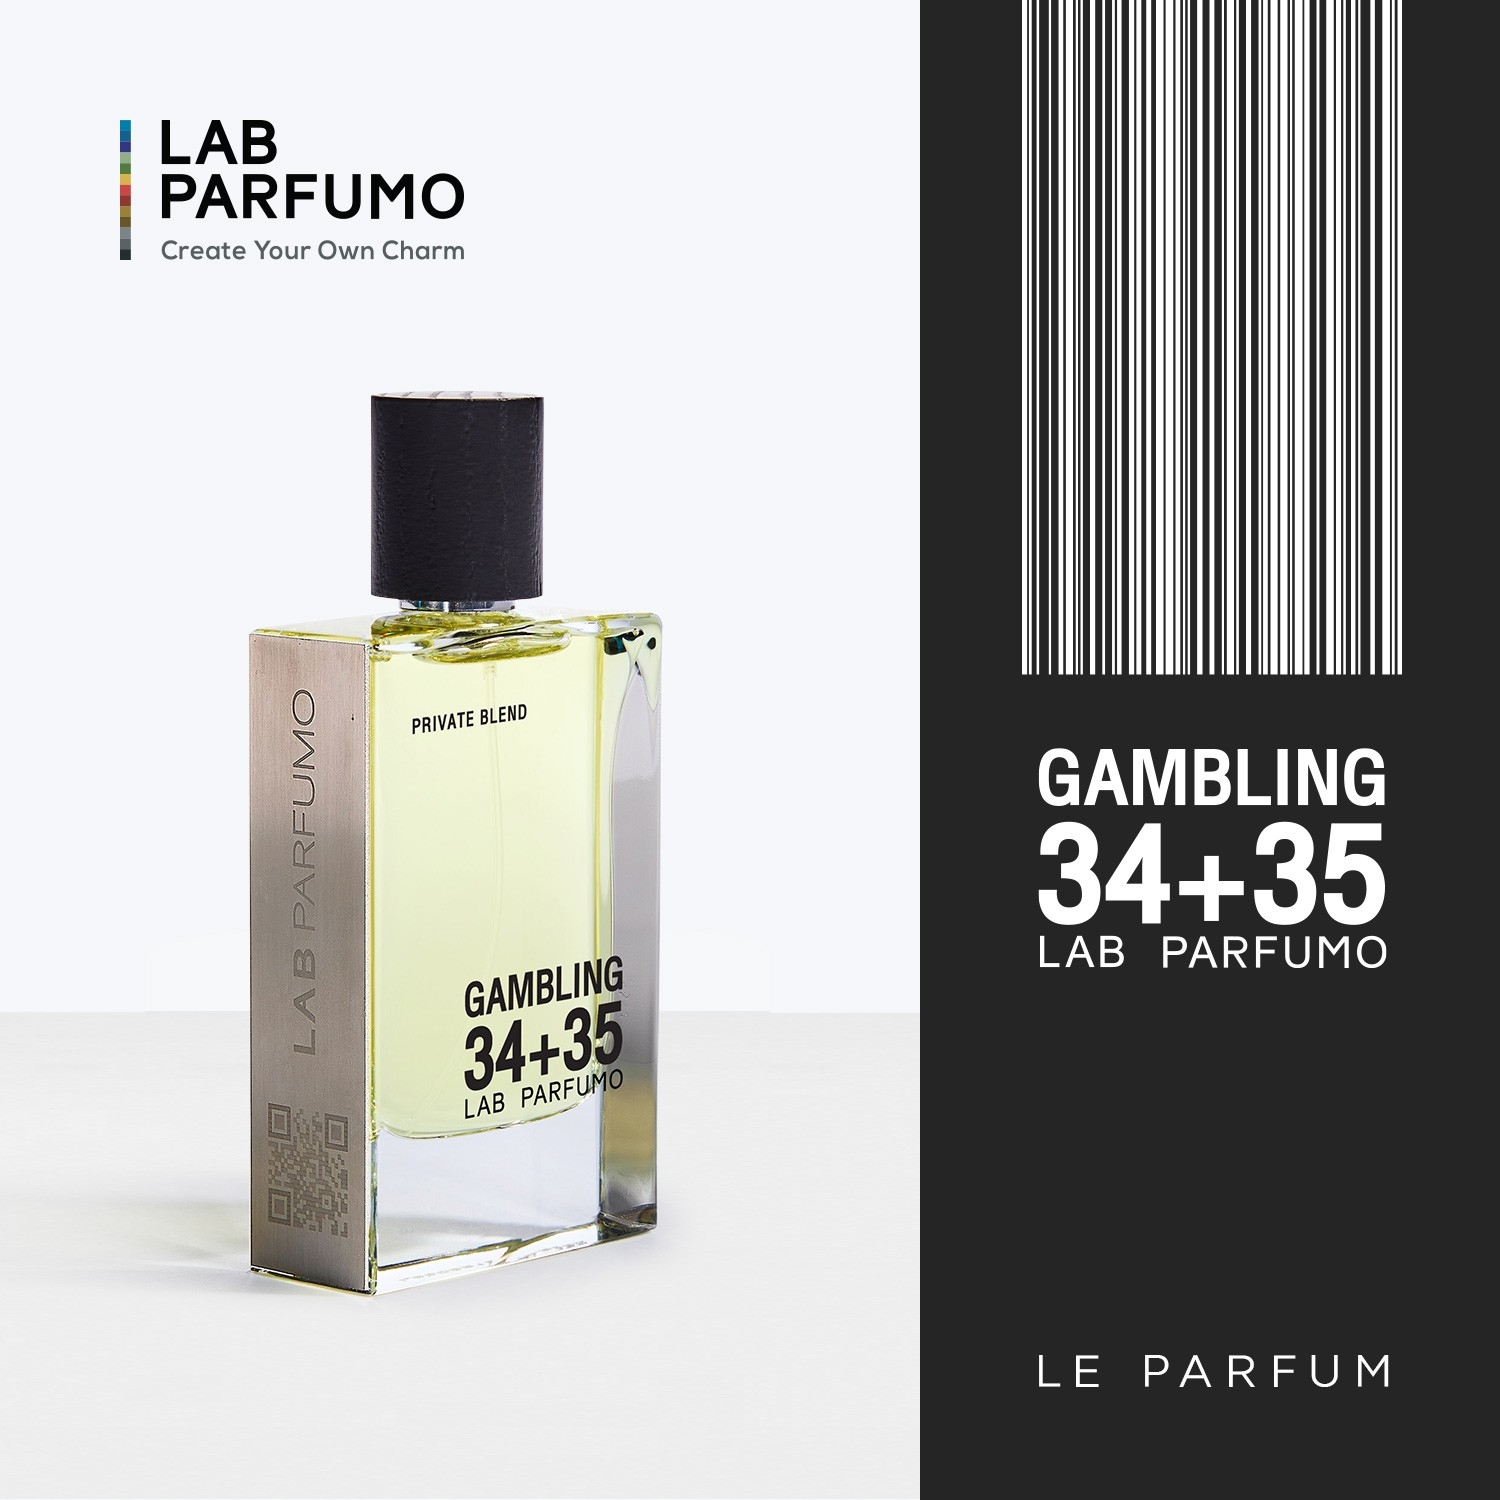 LAB Parfumo, Gambling 34+35 น้ำหอมผู้ชาย (ขนาด 50 ml) เสน่ห์ ความลึกลับ  ที่ชวนค้นหา 